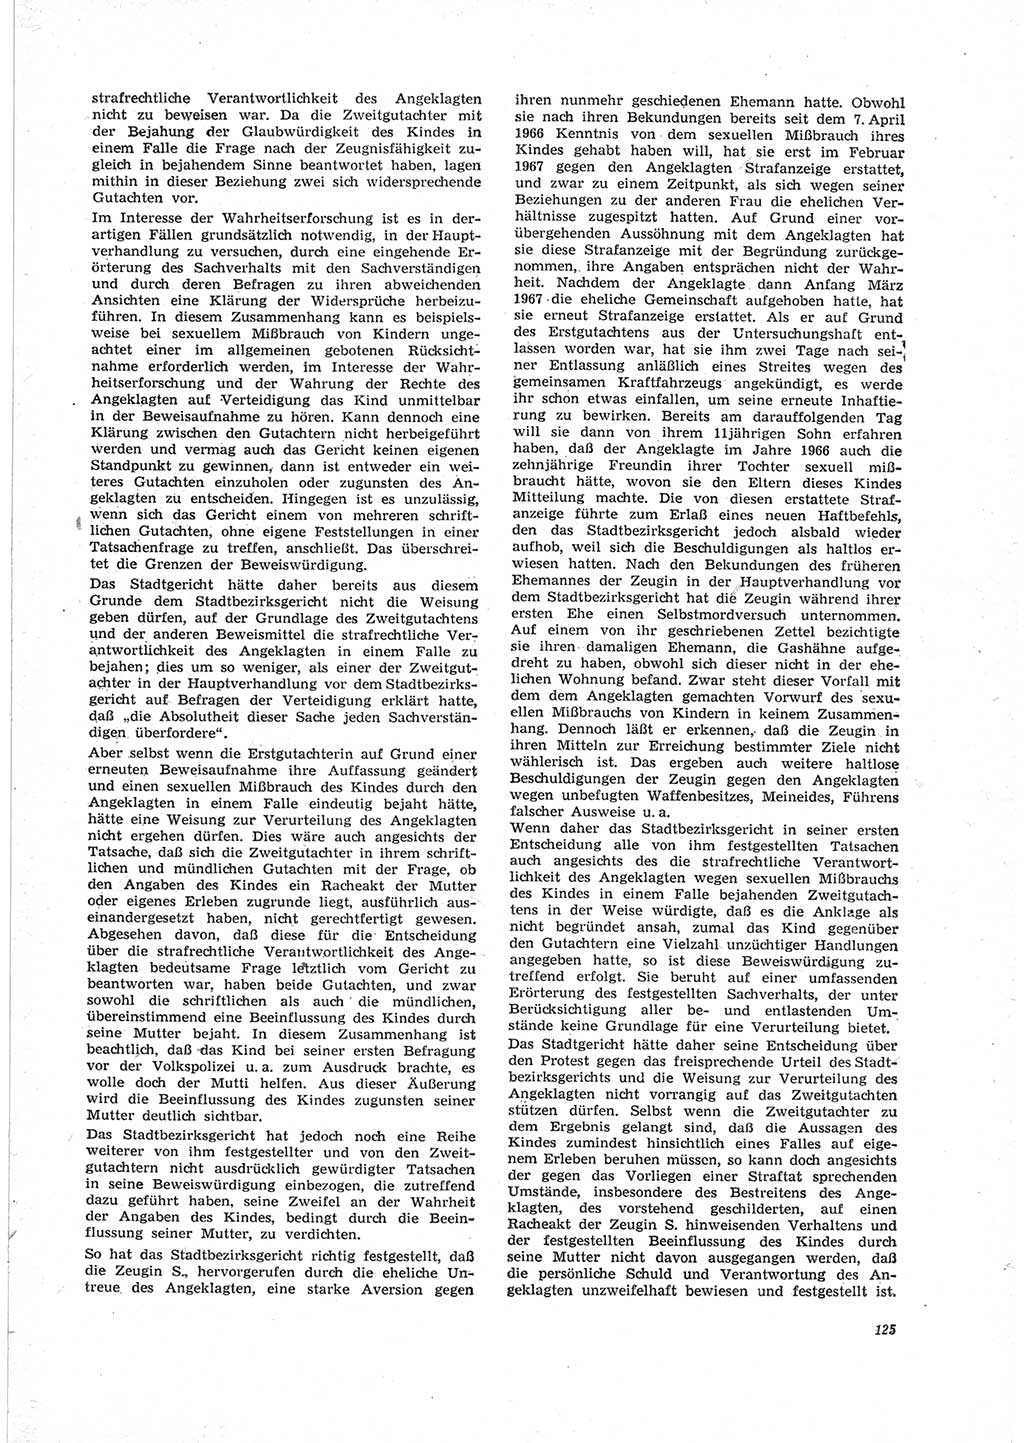 Neue Justiz (NJ), Zeitschrift für Recht und Rechtswissenschaft [Deutsche Demokratische Republik (DDR)], 23. Jahrgang 1969, Seite 125 (NJ DDR 1969, S. 125)